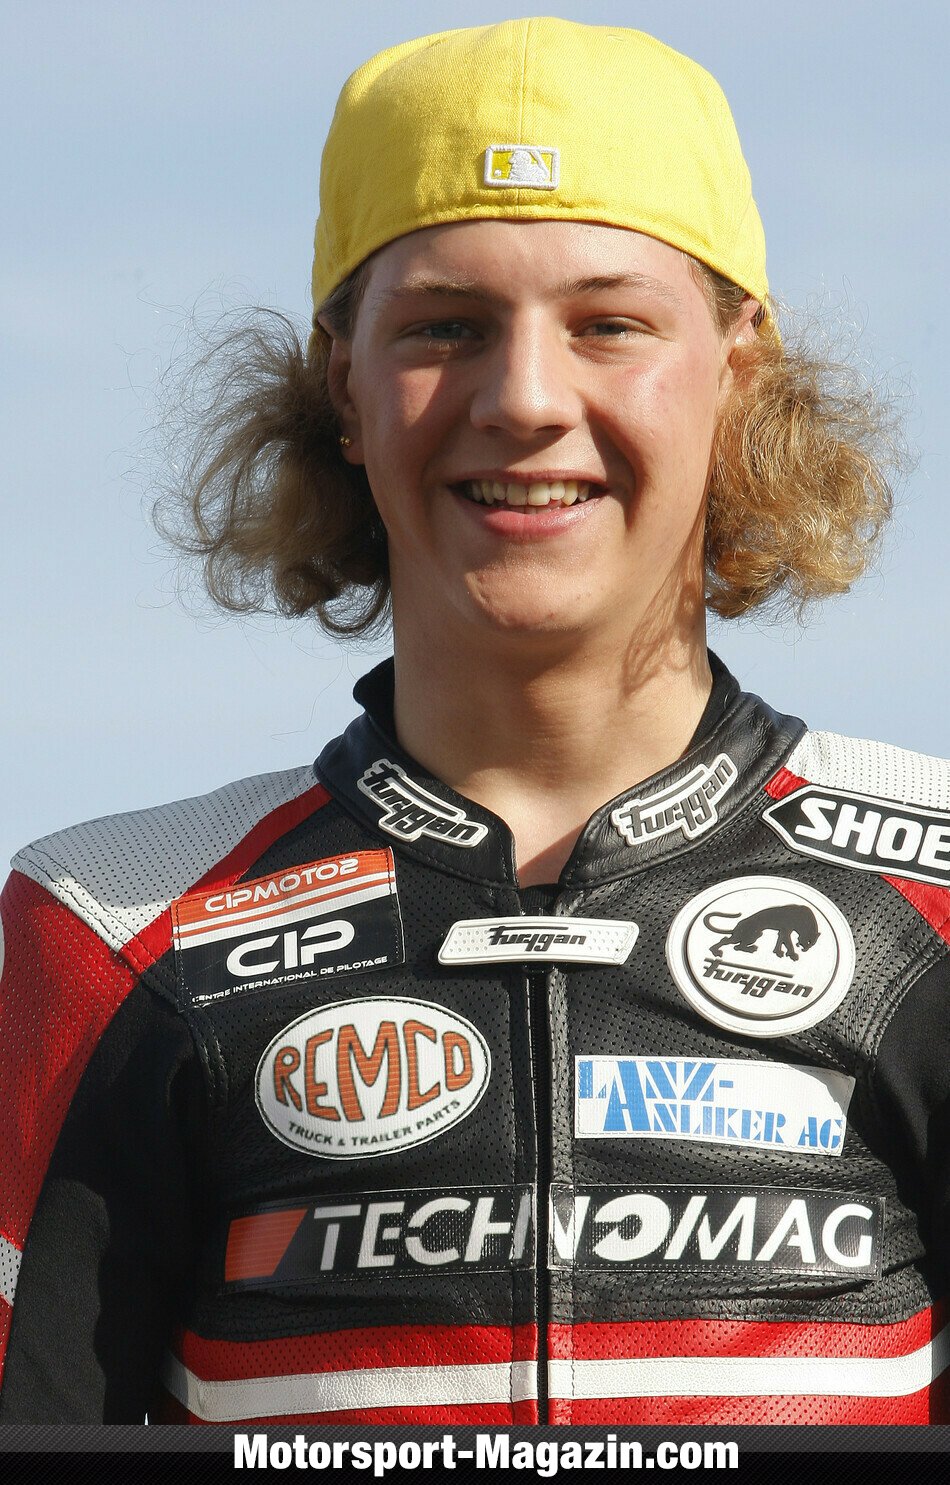 Dominique Aegerter hat für Motorsport-Magazin.com seine Saison eingeschätzt.